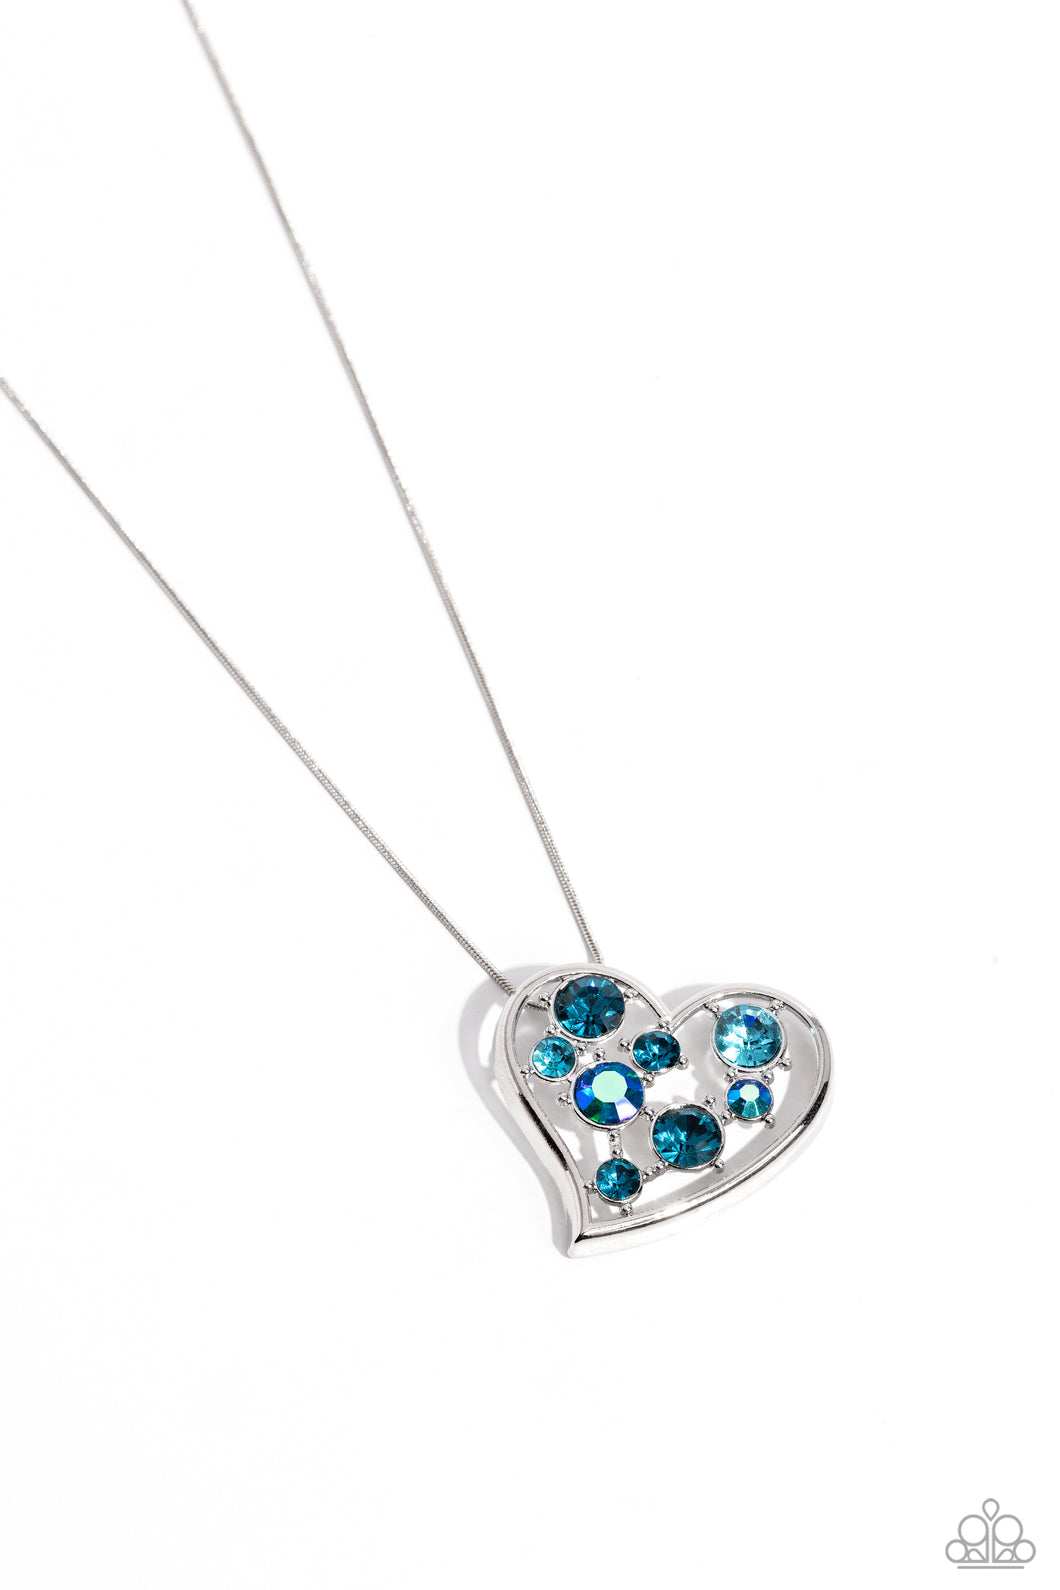 Romantic Recognition - Blue Necklace